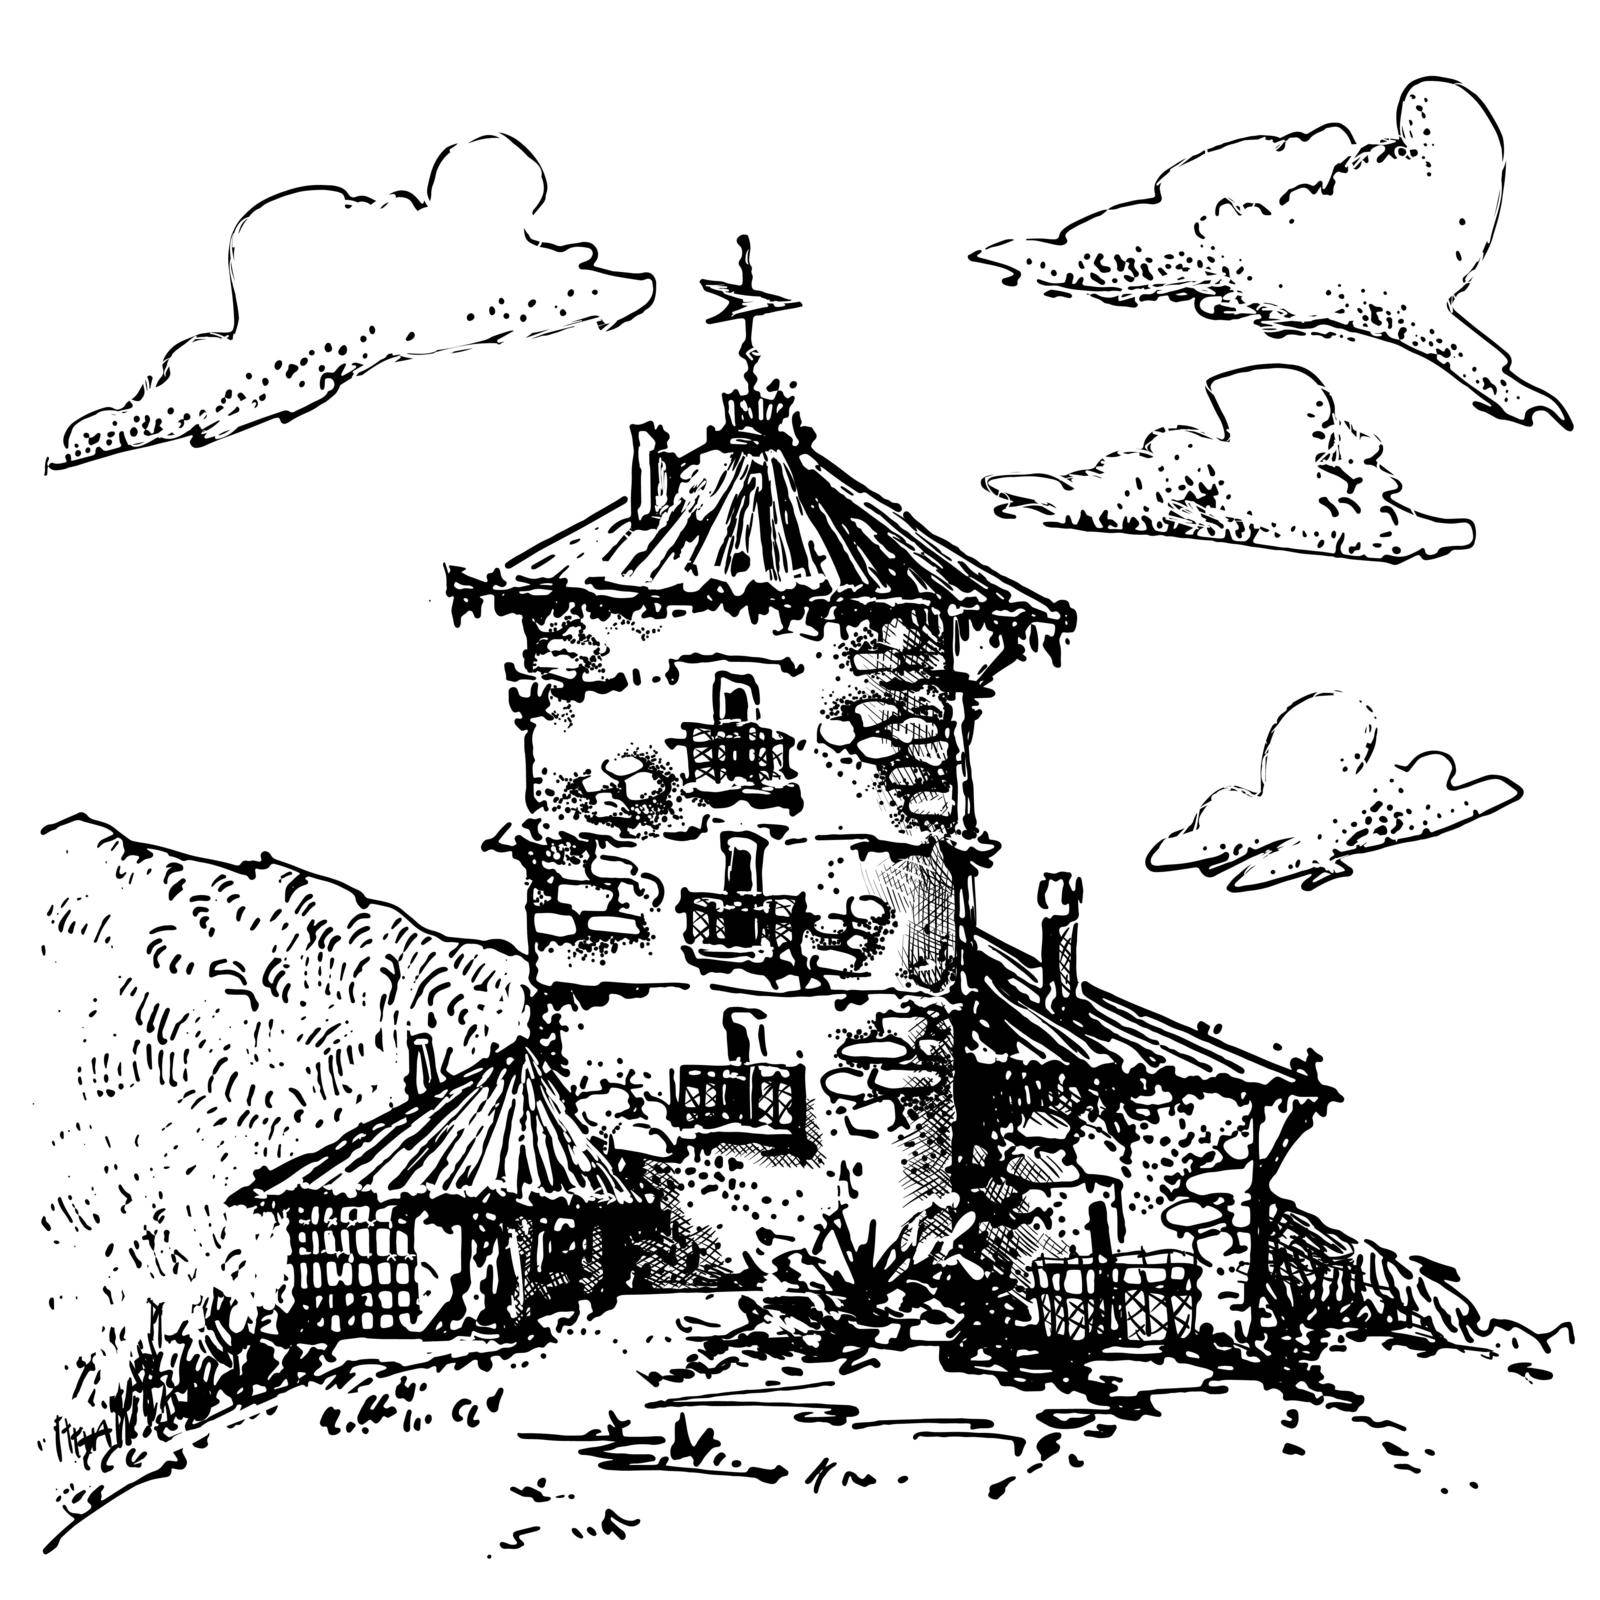 Hand-drawn sketch of temple by Olatarakanova